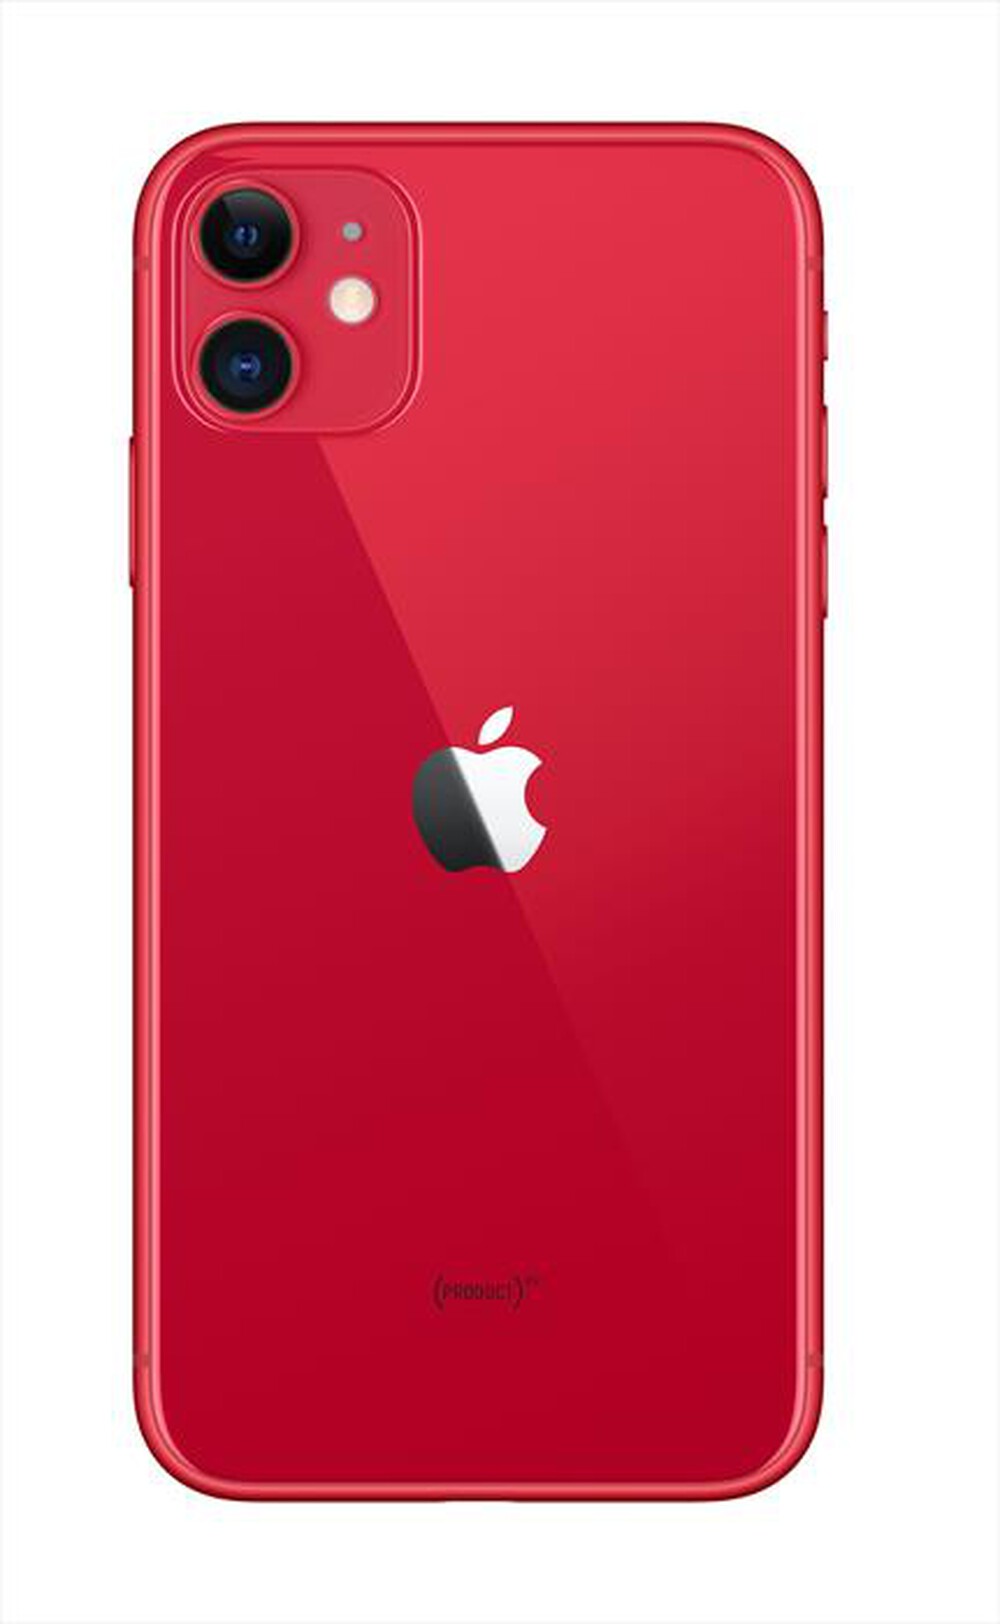 "APPLE - iPhone 11 128GB OTTIMO BATTERIA NUOVA-Rosso"